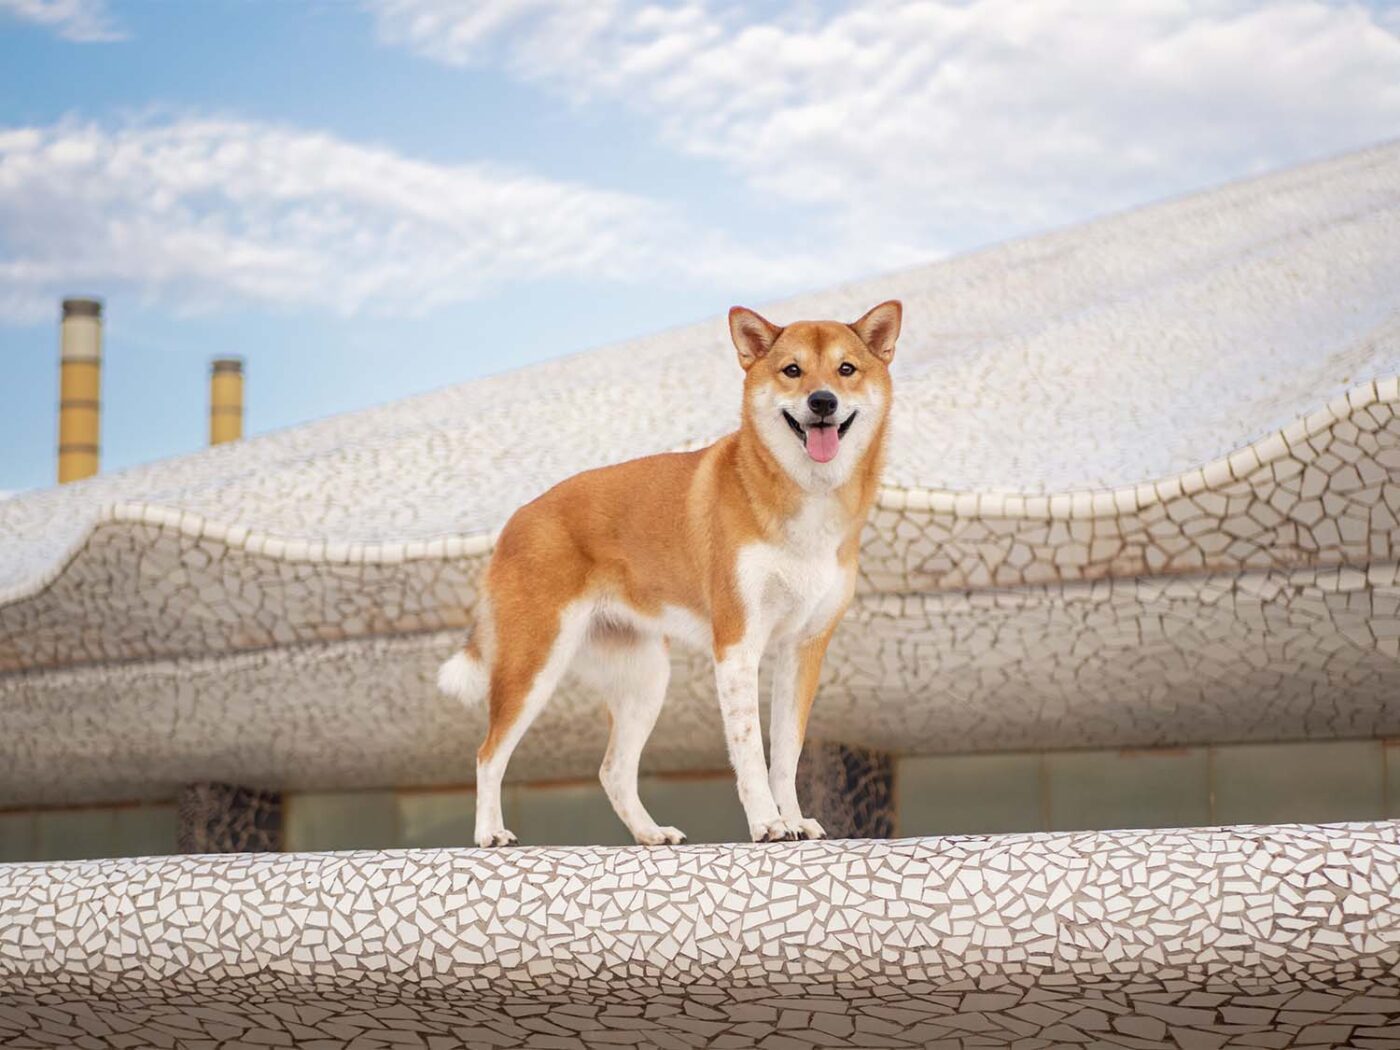 Sesion de fotos de un perro de raza shiba inu en Montjuic, Barcelona